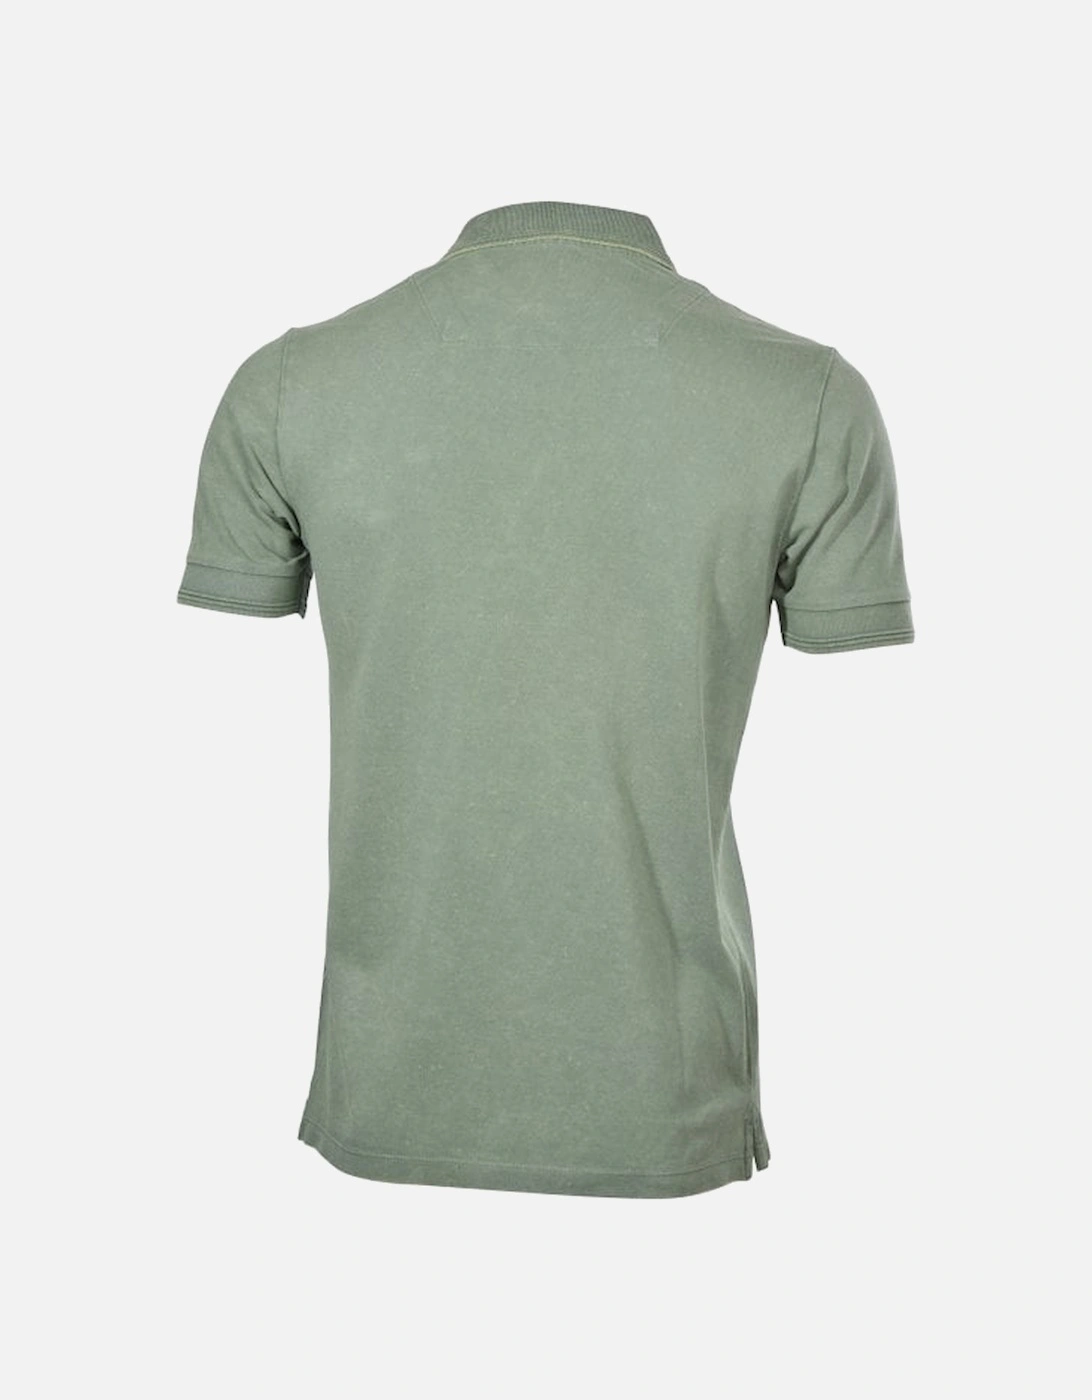 Pique Polo Shirt, Olive Green